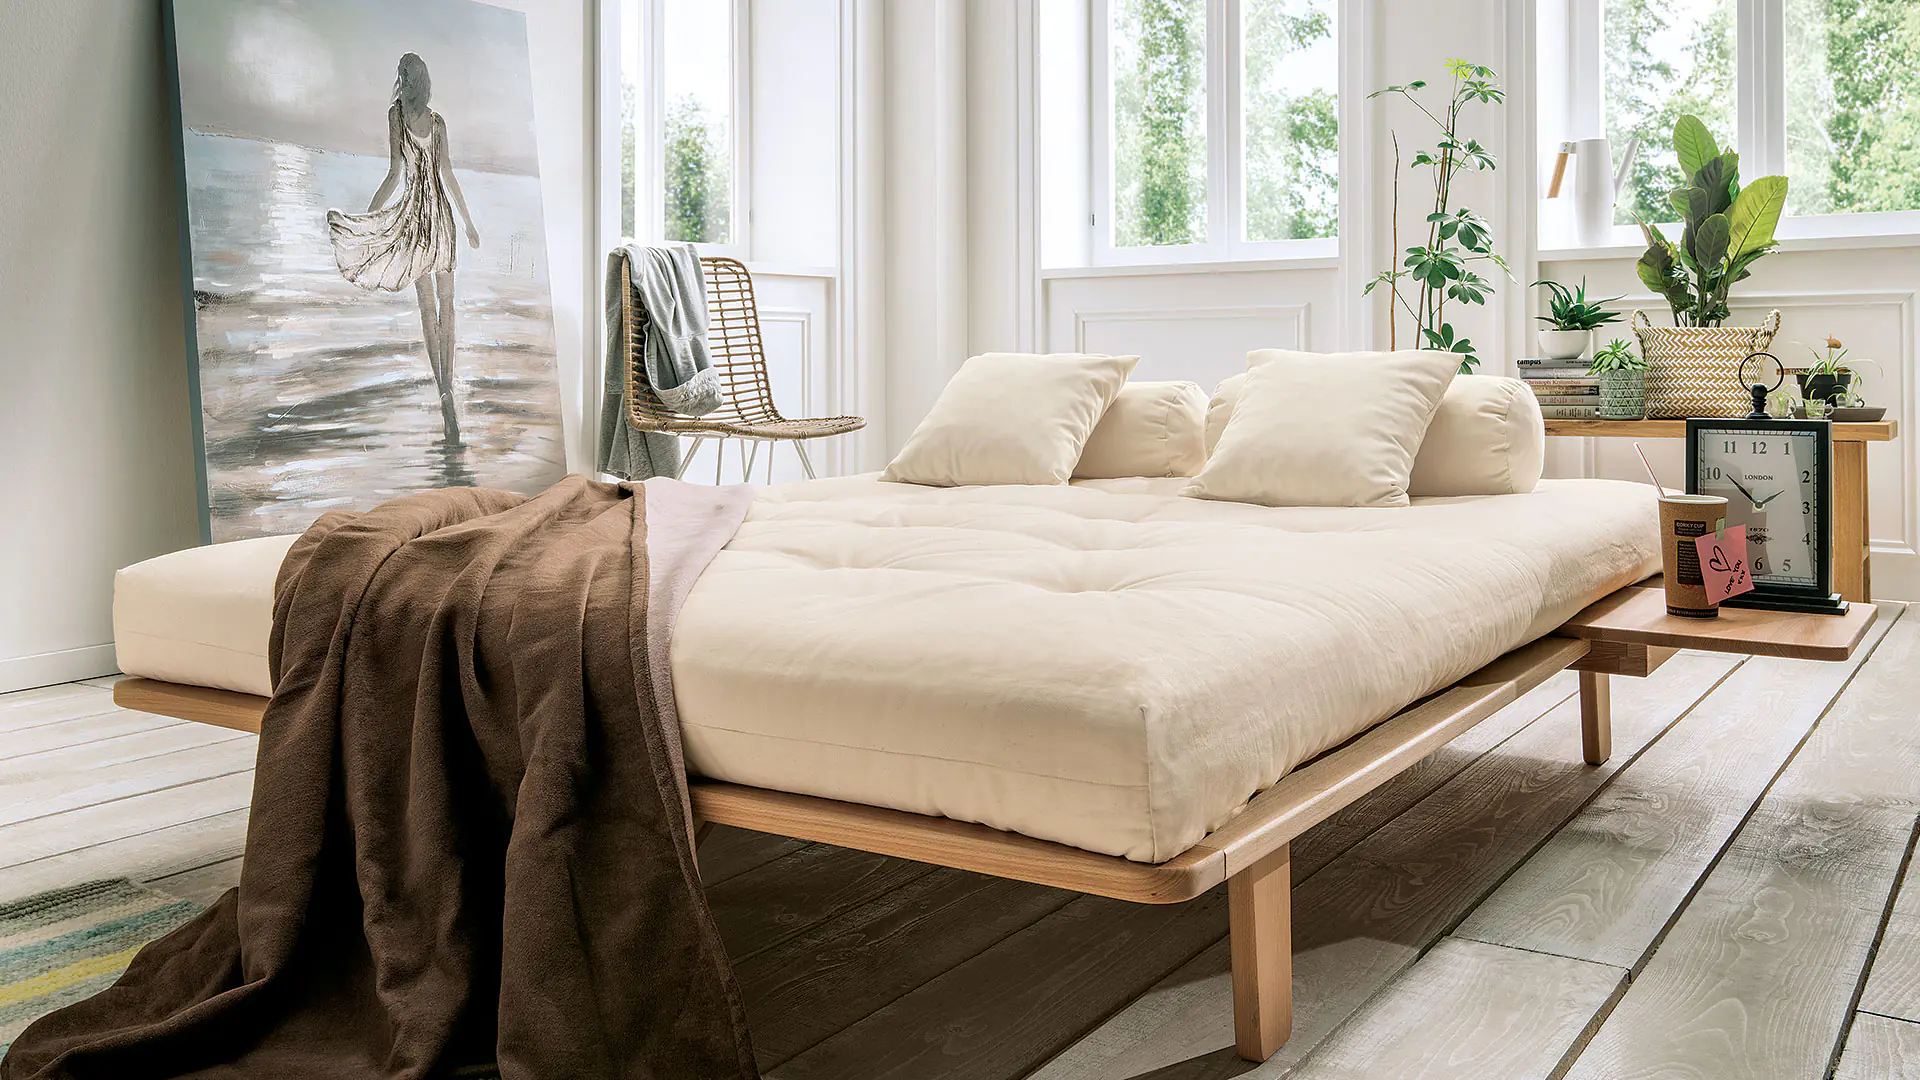 Le matelas futon Suma-Melia offre un confort d'assise et de couchage à élasticité ponctuelle et ferme